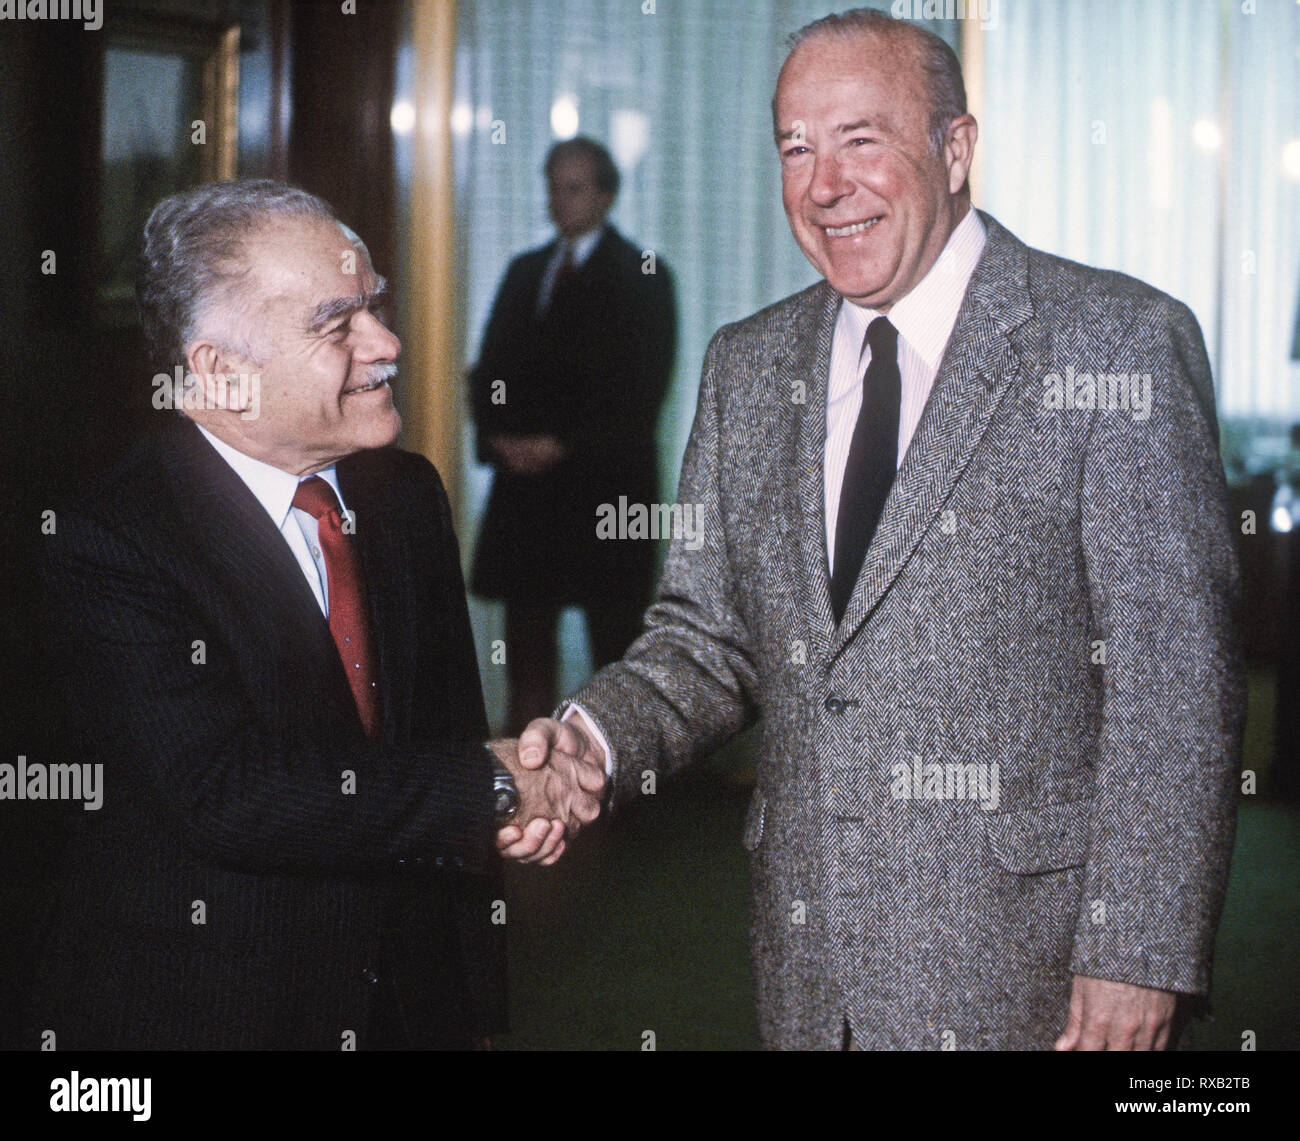 Washington, DC., USA, le 27 novembre 1983, Yitzhak Shamir, Premier Ministre d'Israël, serre la main avec le secrétaire d'État George Shultz. Un homme politique israélien Shamir et le septième premier ministre d'Israël, deux mandats. Avant la création de l'Etat d'Israël, Shamir était un chef de l'groupe paramilitaire sioniste Léhi. Après la création de l'Etat d'Israël, il sert dans le Mossad entre 1955 et 1965 Crédit : Mark Reinstein/MediaPunch Banque D'Images